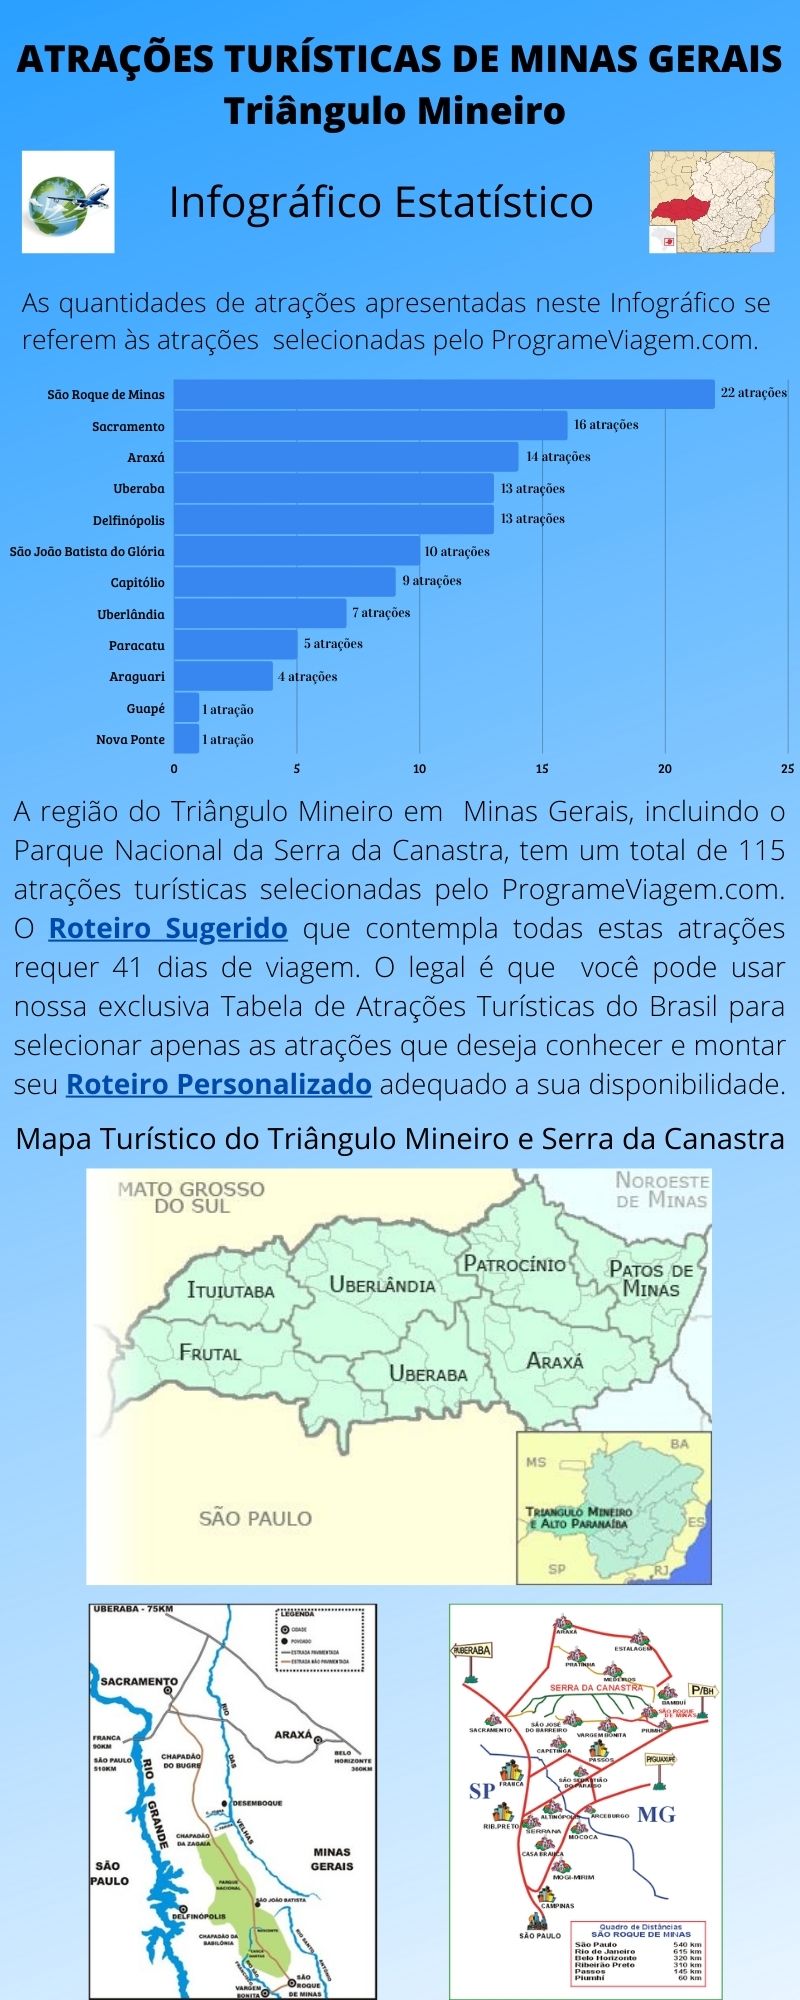 Infográfico Atrações Turísticas de Minas Gerais (Triângulo Mineiro)